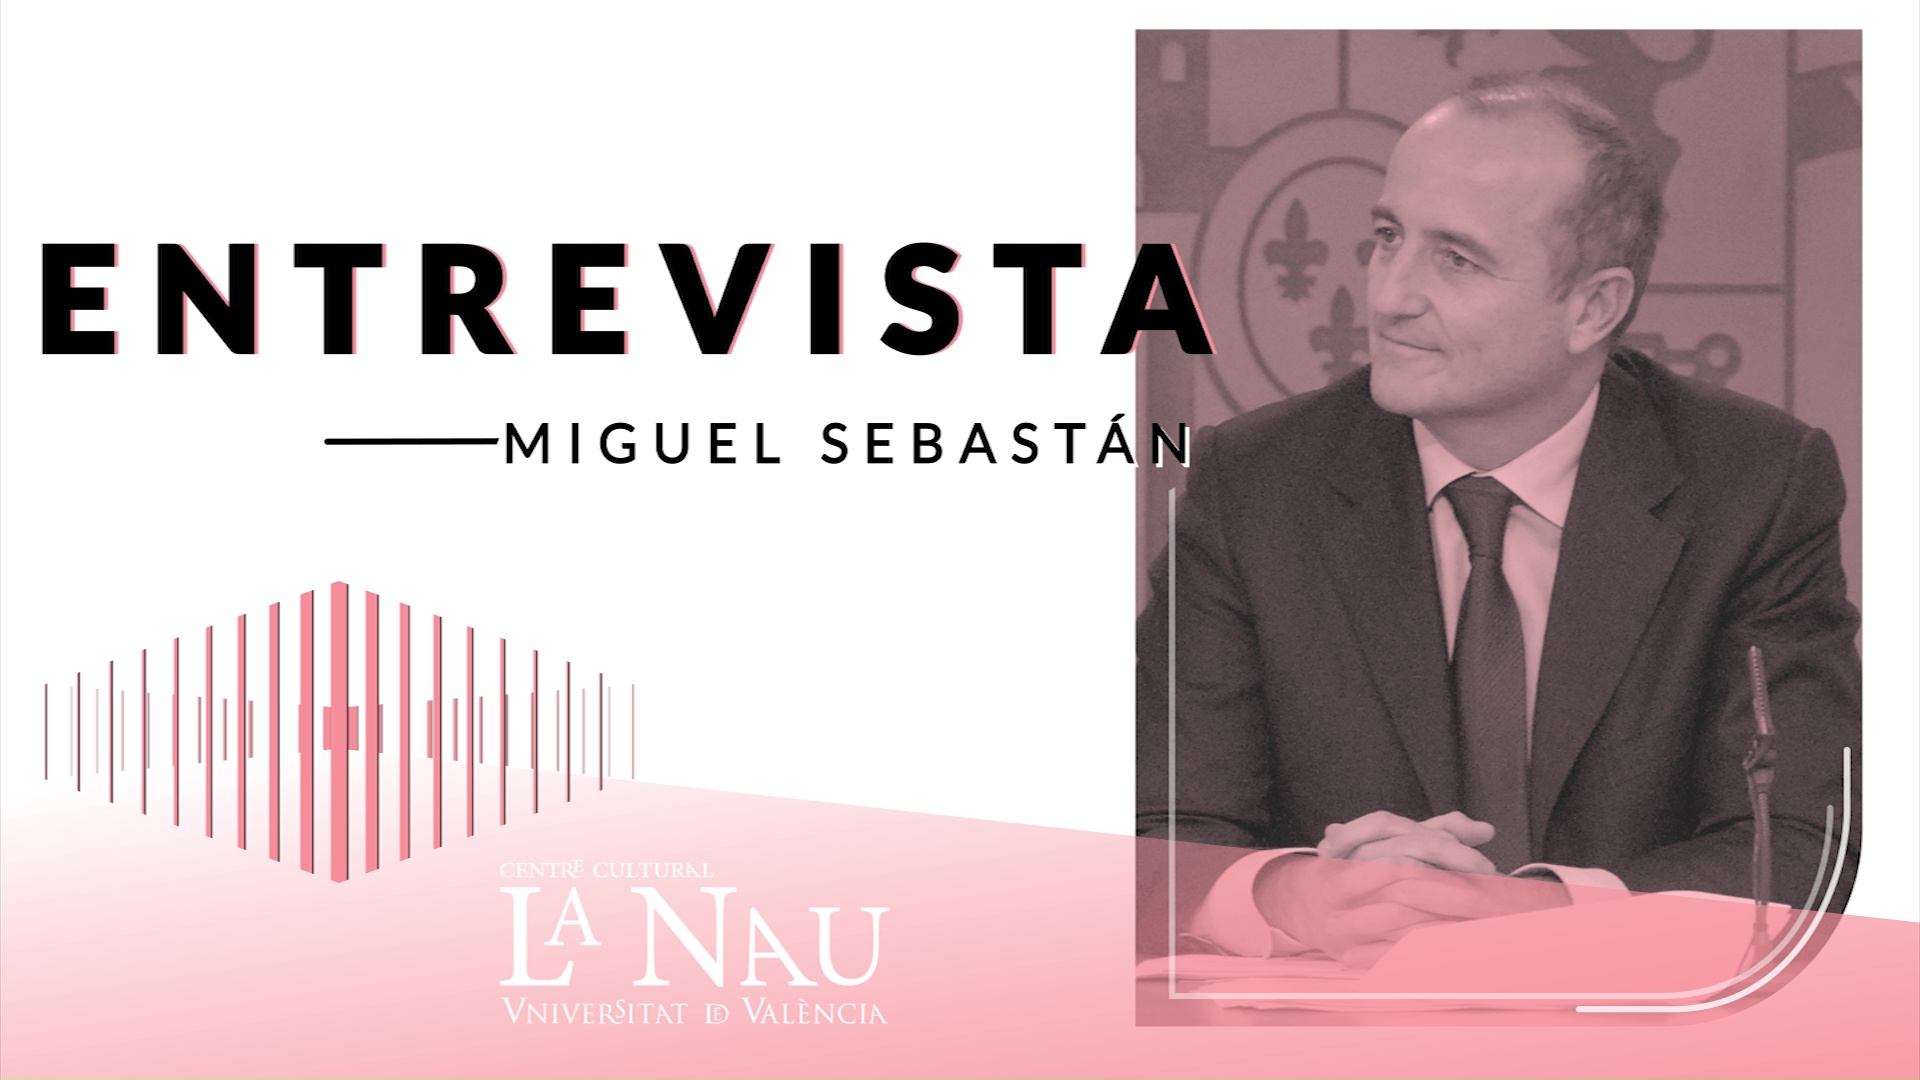 Entrevista a La Nau. Miguel Sebastián